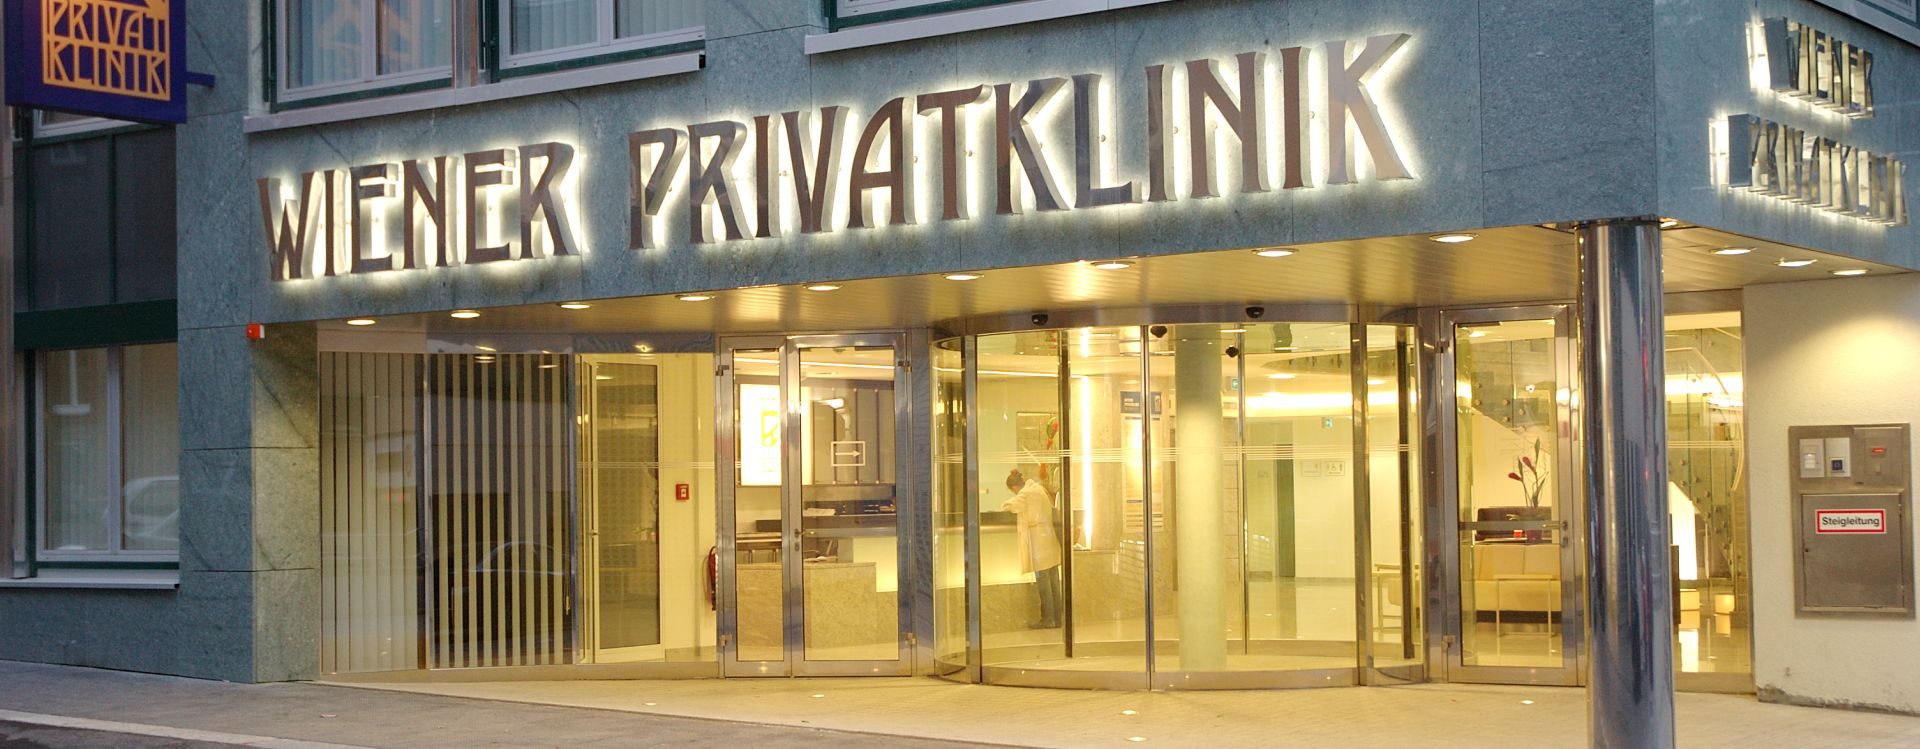 The History of the Wiener Privatklinik